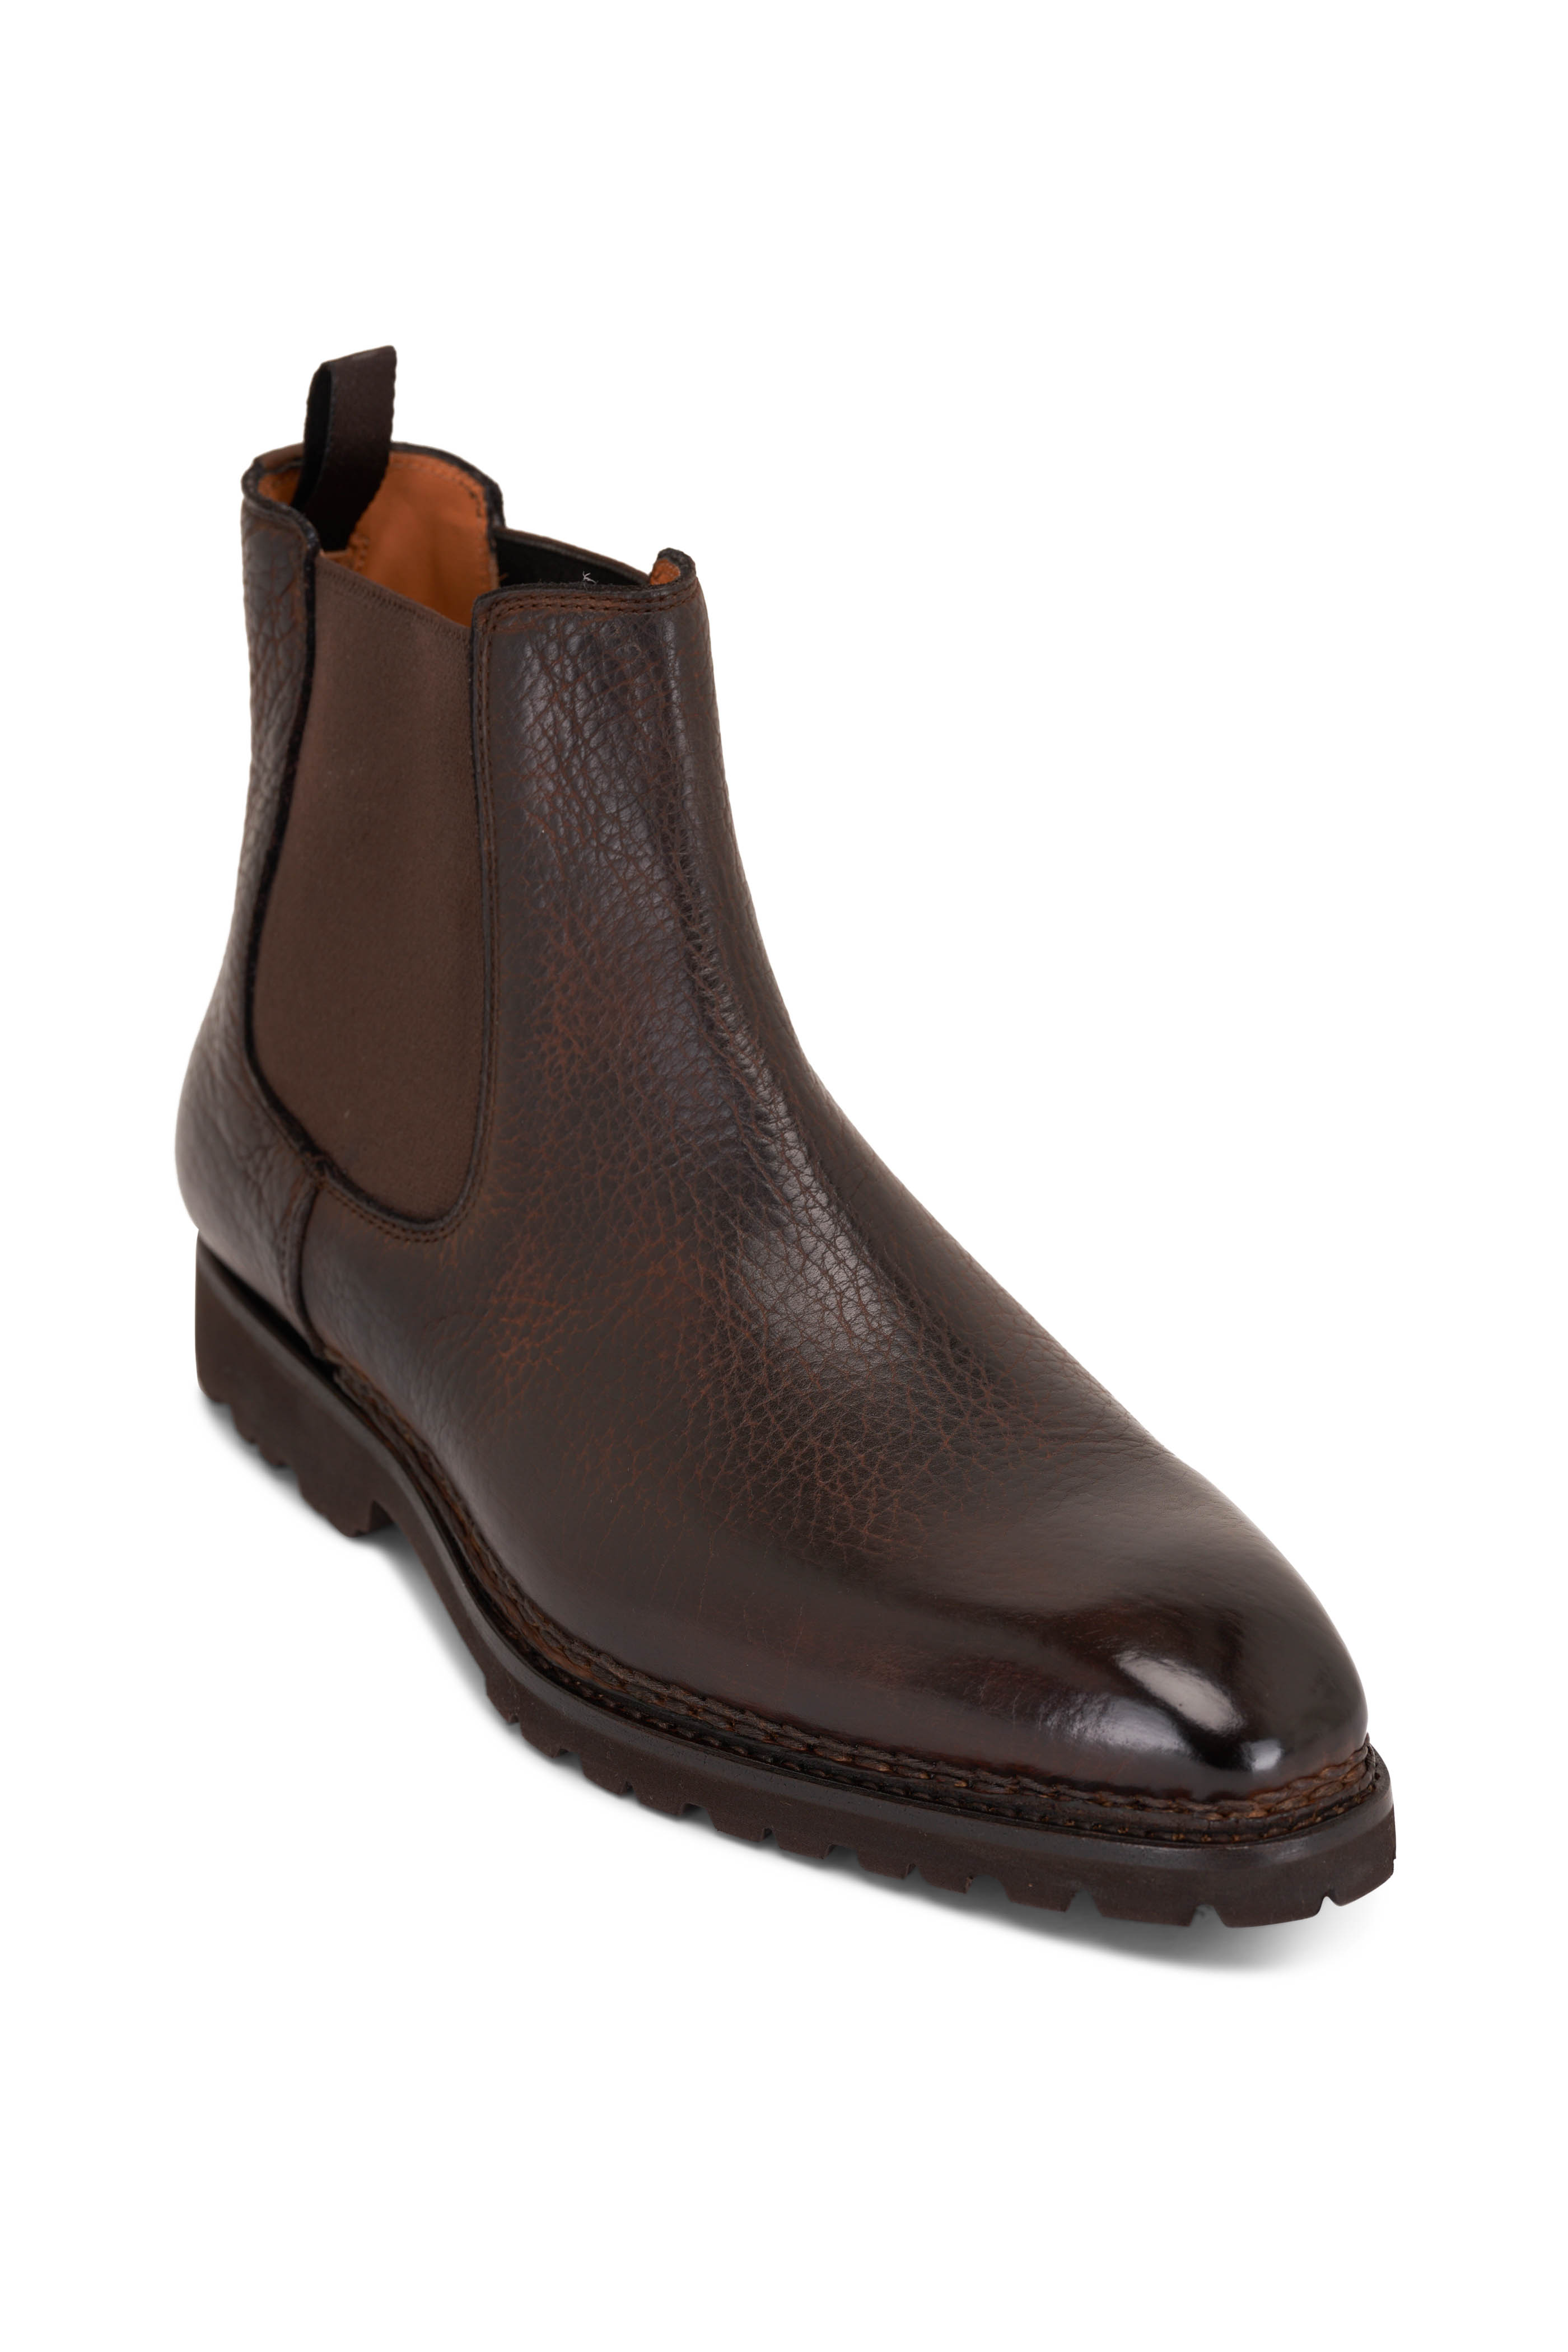 Berluti - Brunico Marrone Intenso Brown Leather Boot